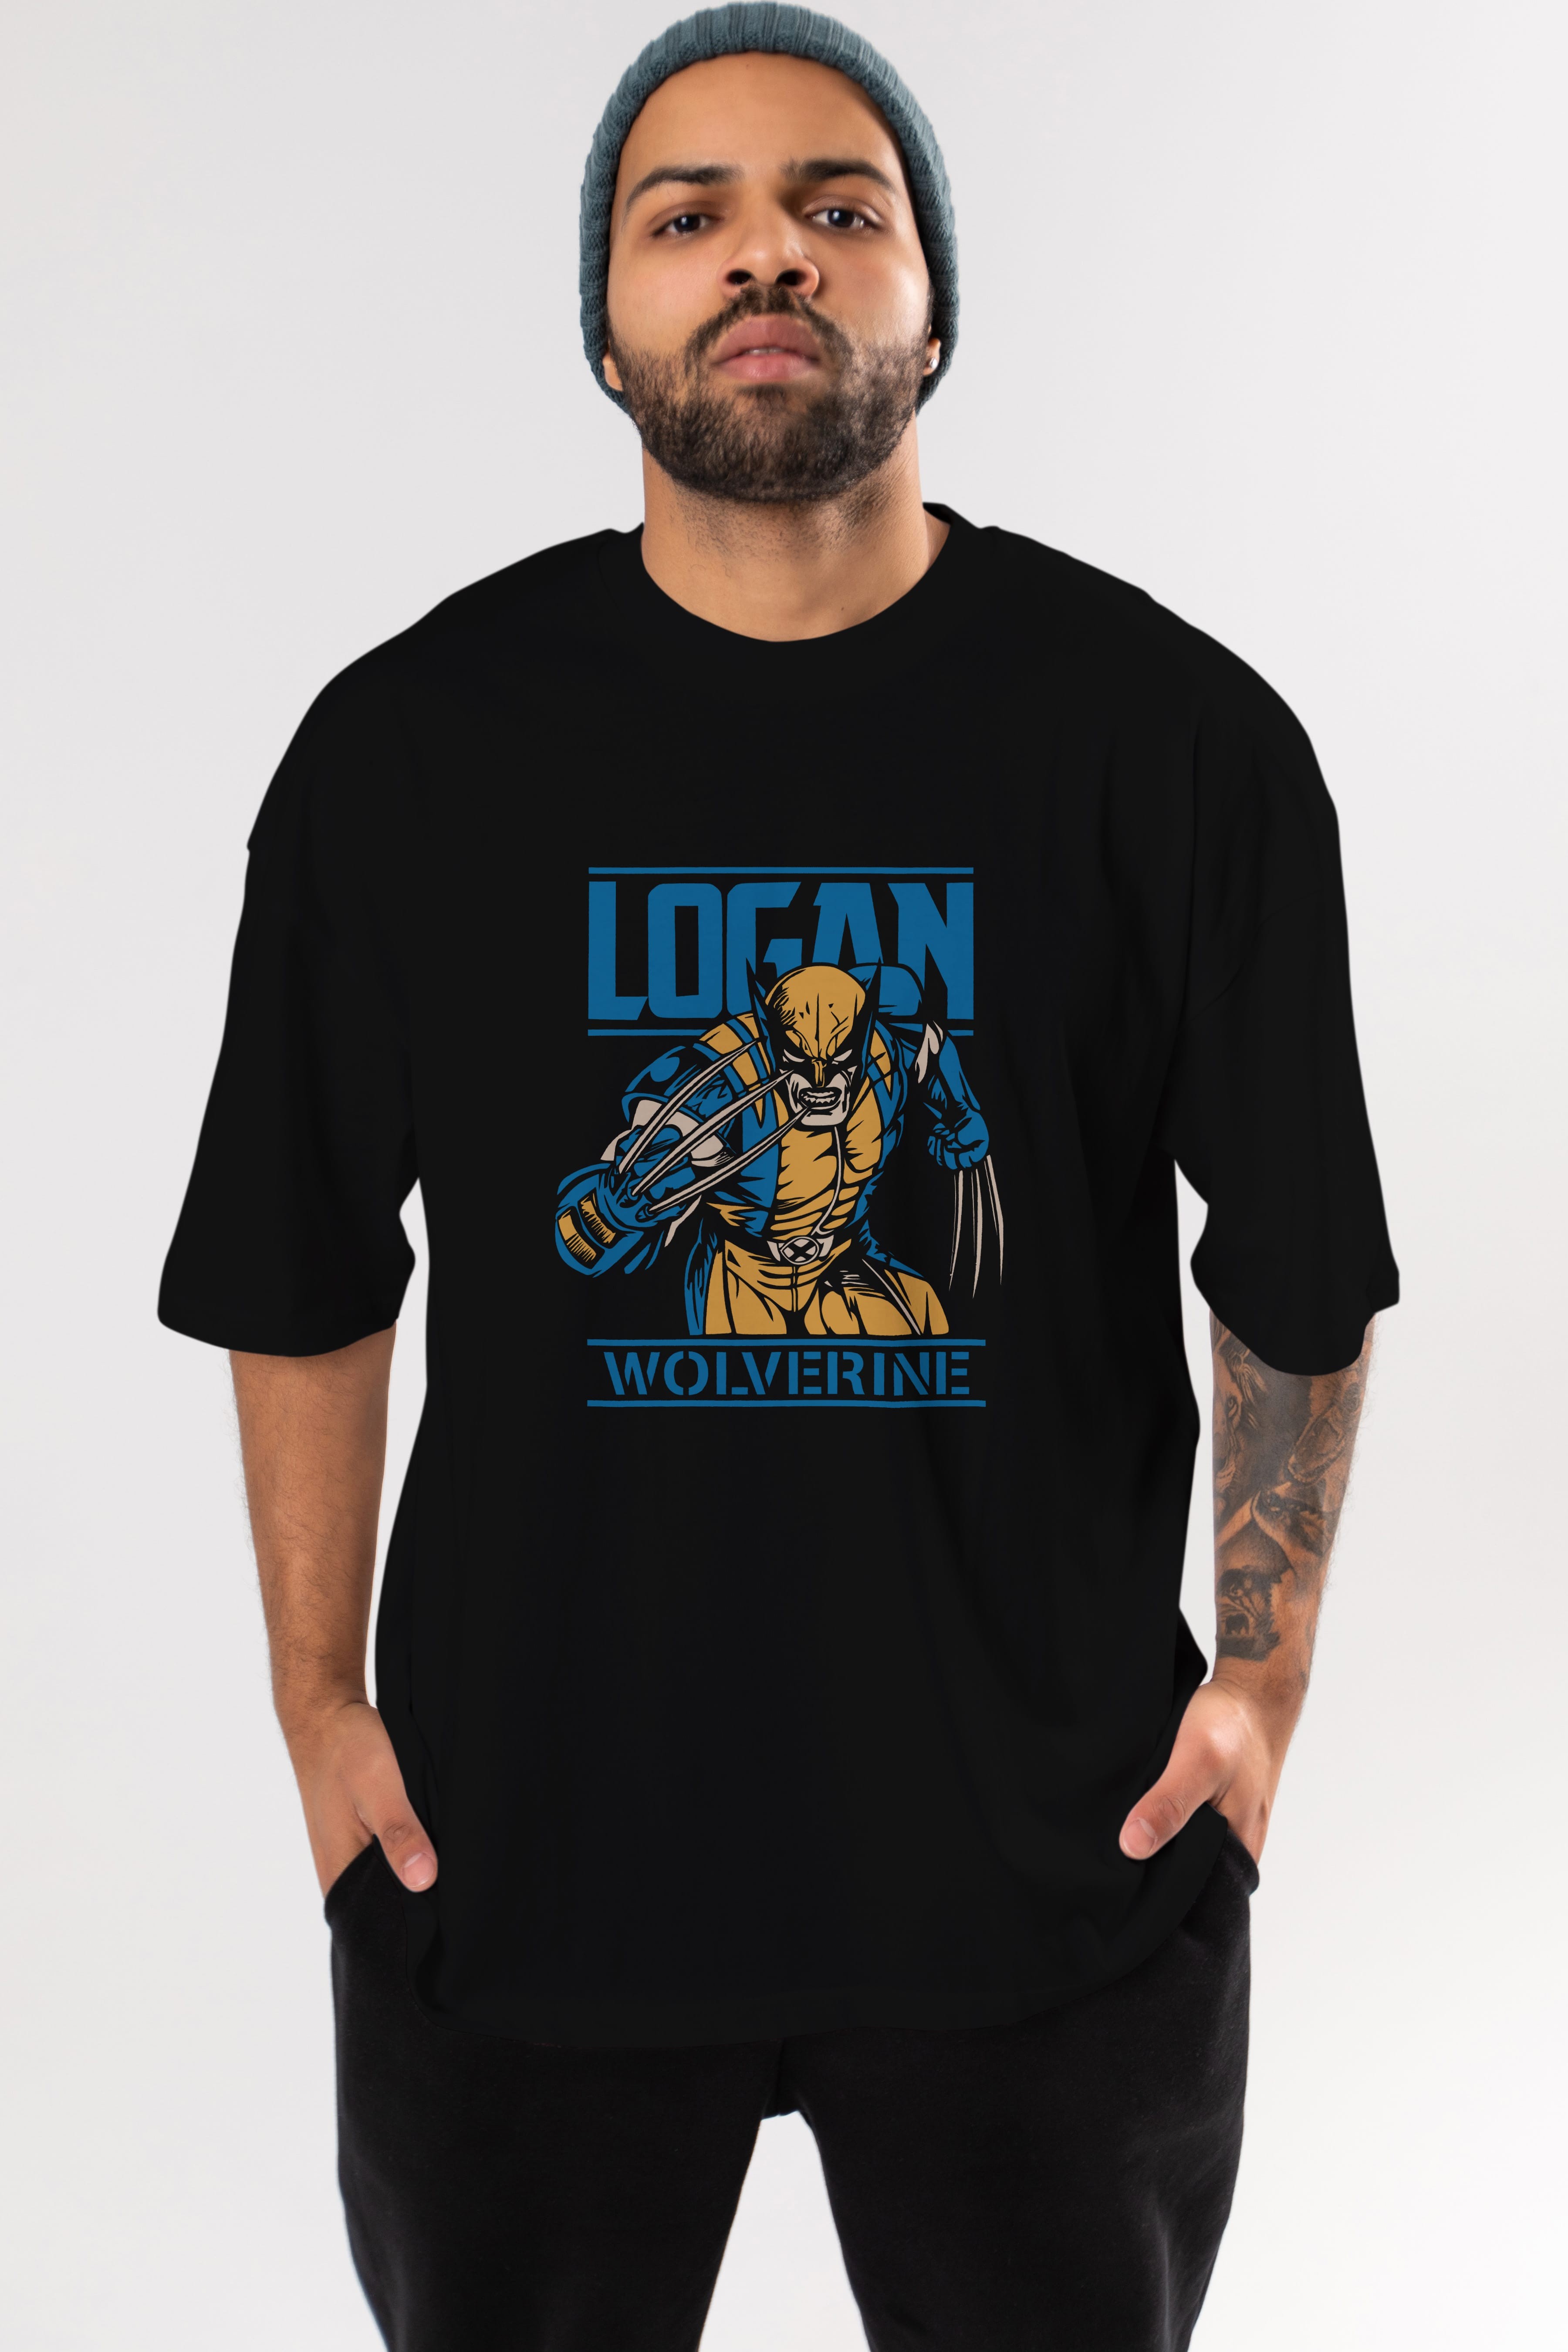 Wolverine Logan Ön Baskılı Oversize t-shirt Erkek Kadın Unisex %100 Pamuk Bisiklet Yaka tişort